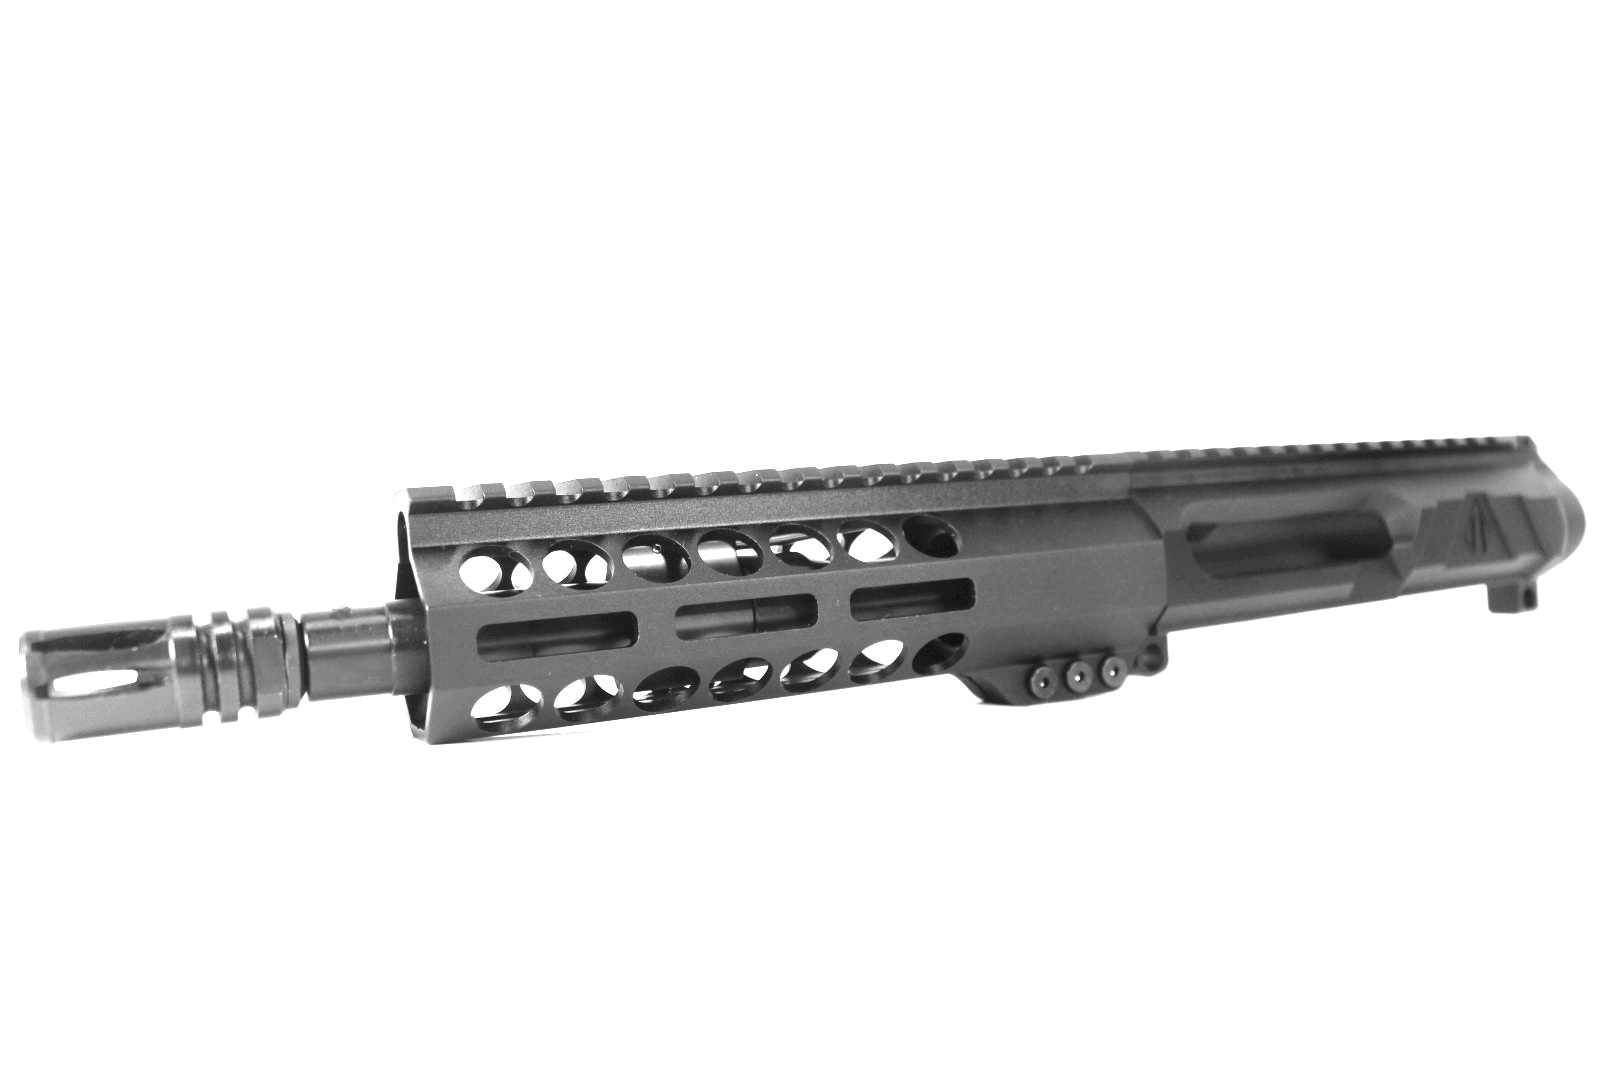 8 inch AR-15 LEFT HANDED AR-15 Non Reciprocating Side Charging 5.56 NATO Pistol Melonite Upper